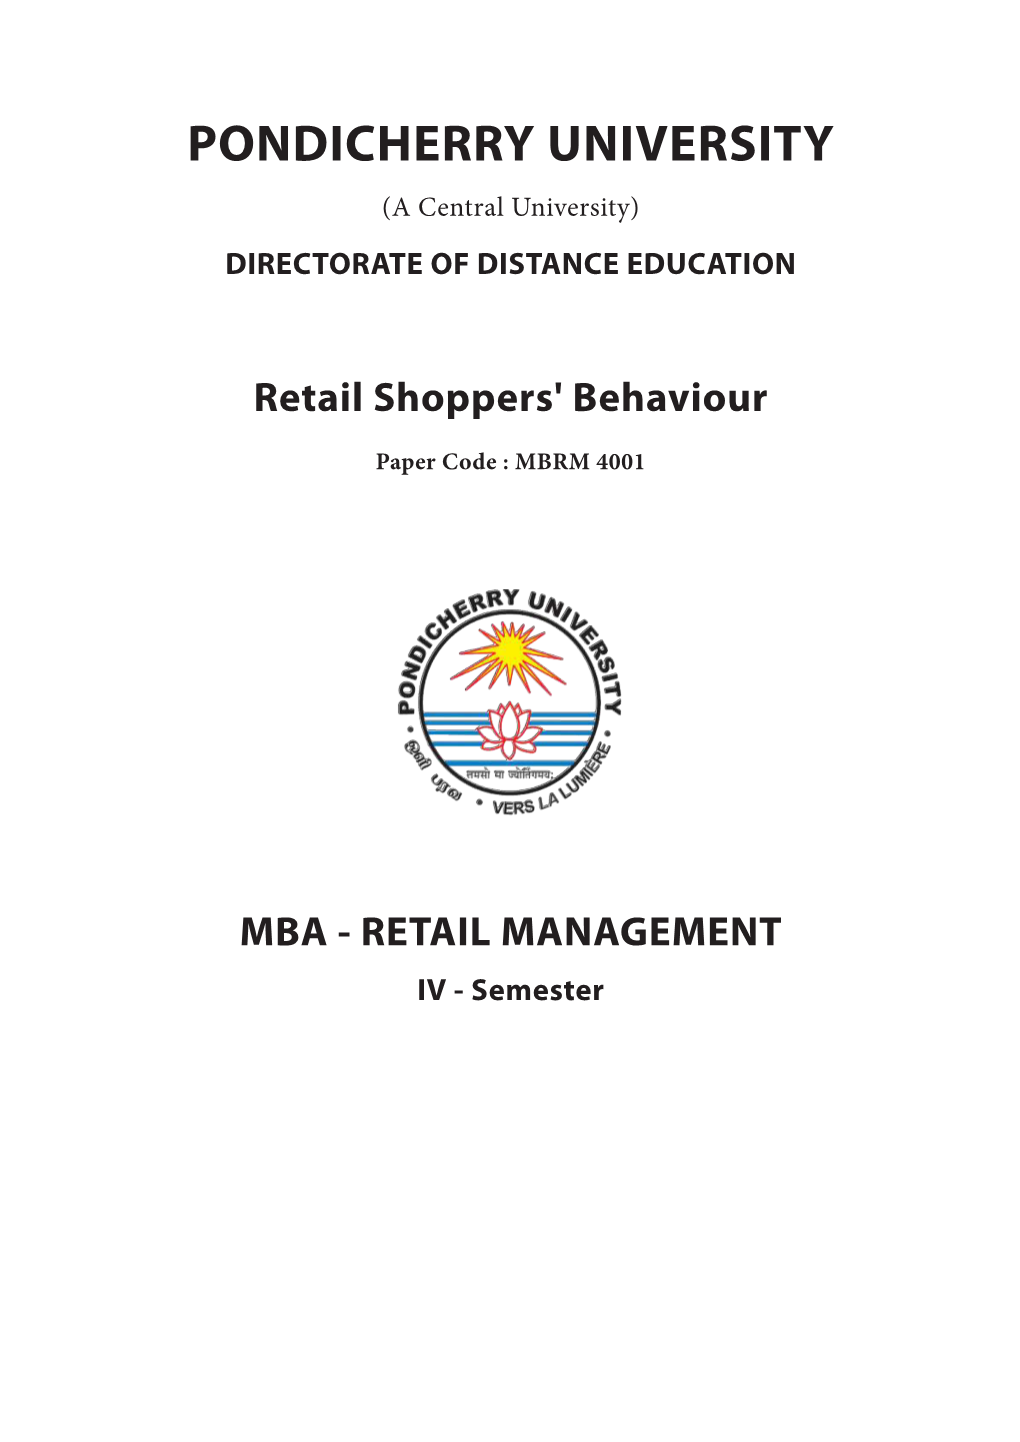 Retail Shoppers' Behaviour